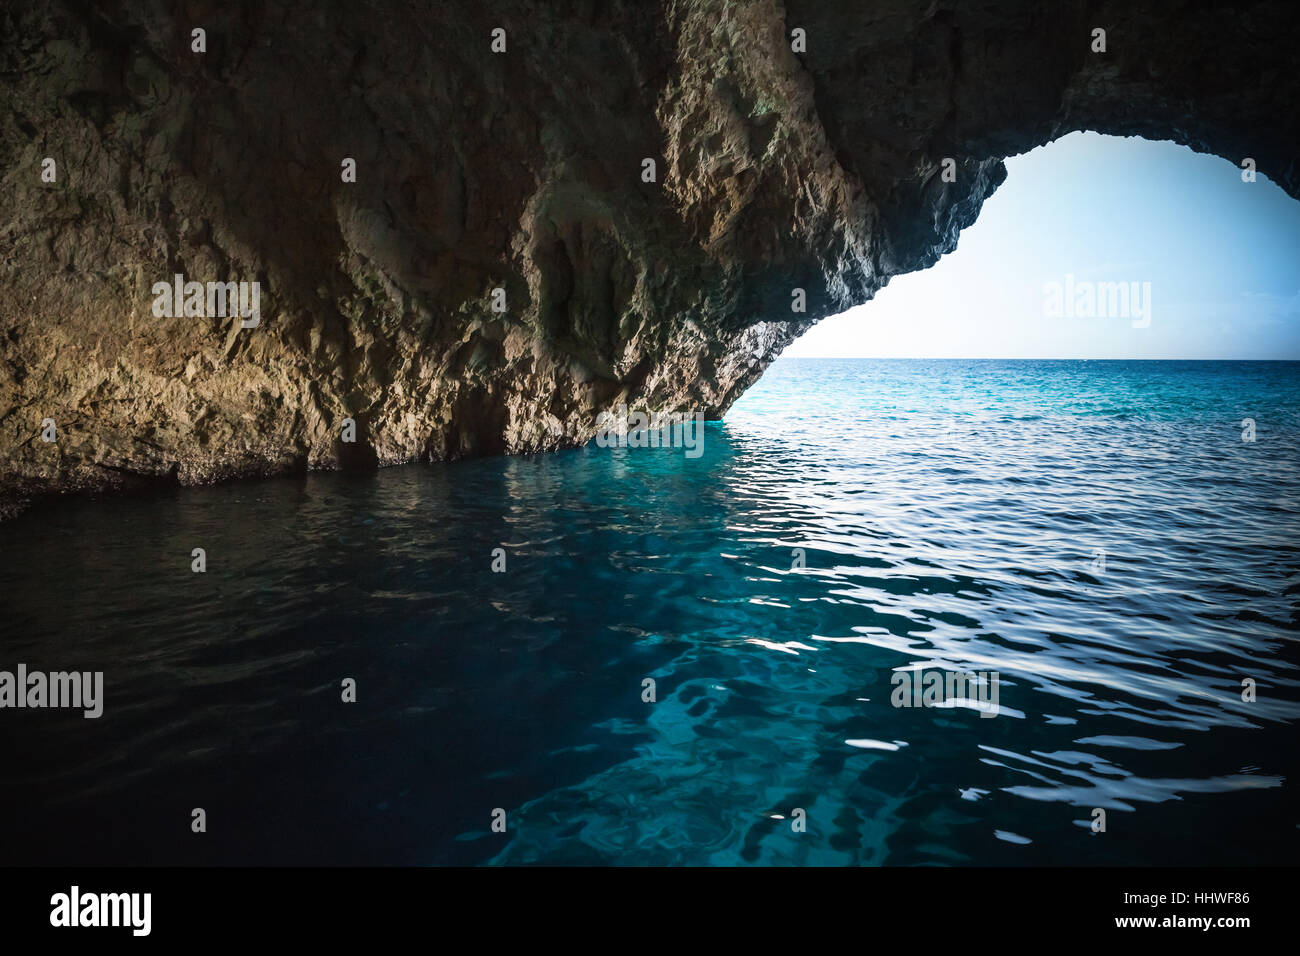 Innenansicht der blauen Grotten, natürliche Küsten Formationen der griechischen Insel Zakynthos im Ionischen Meer. Beliebte touristische destination Stockfoto